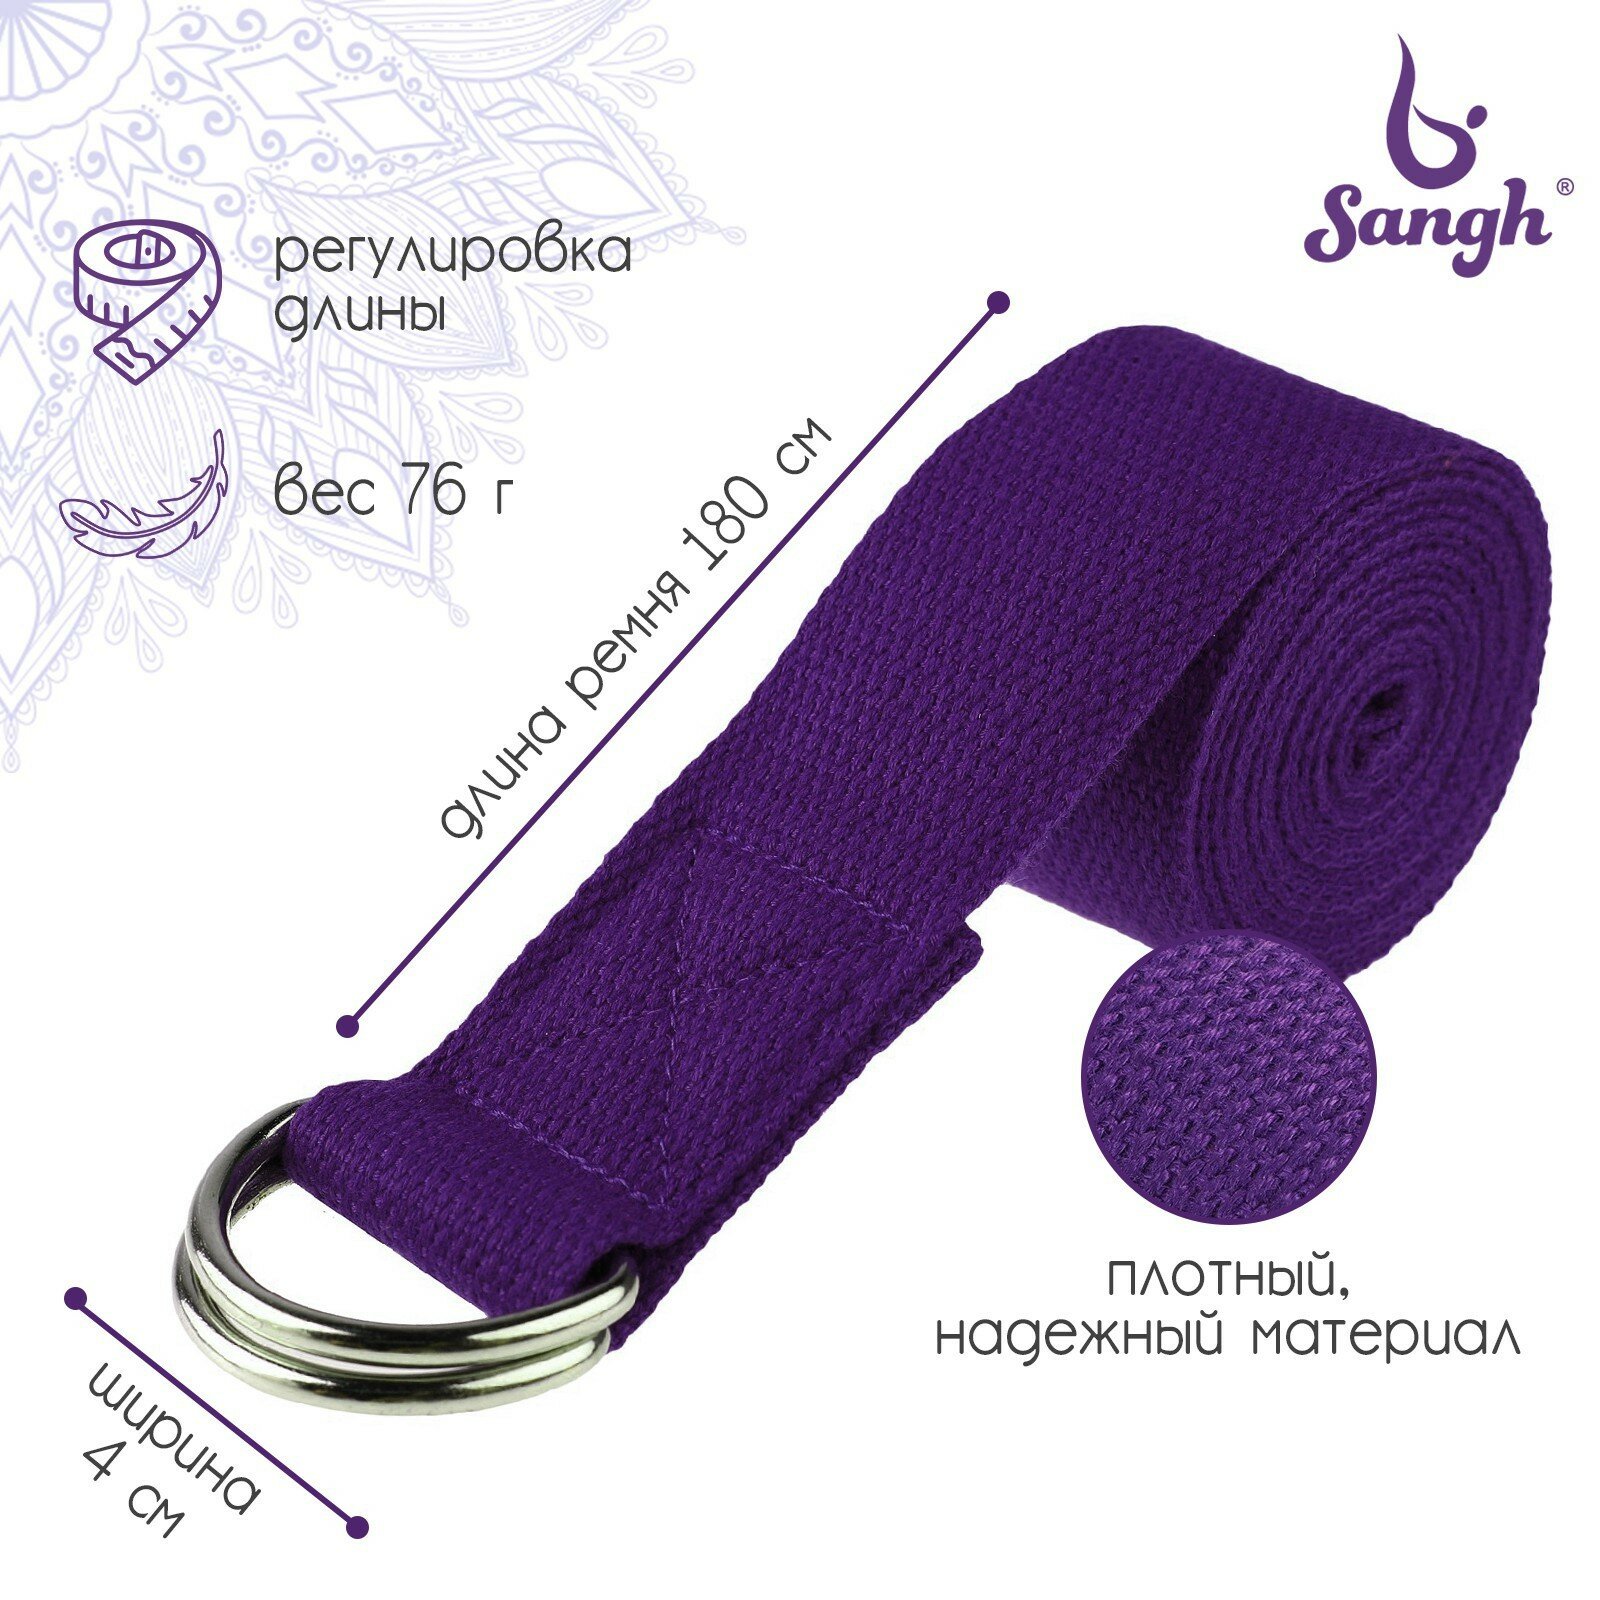 Ремень для йоги, 180х4 см, цвет фиолетовый